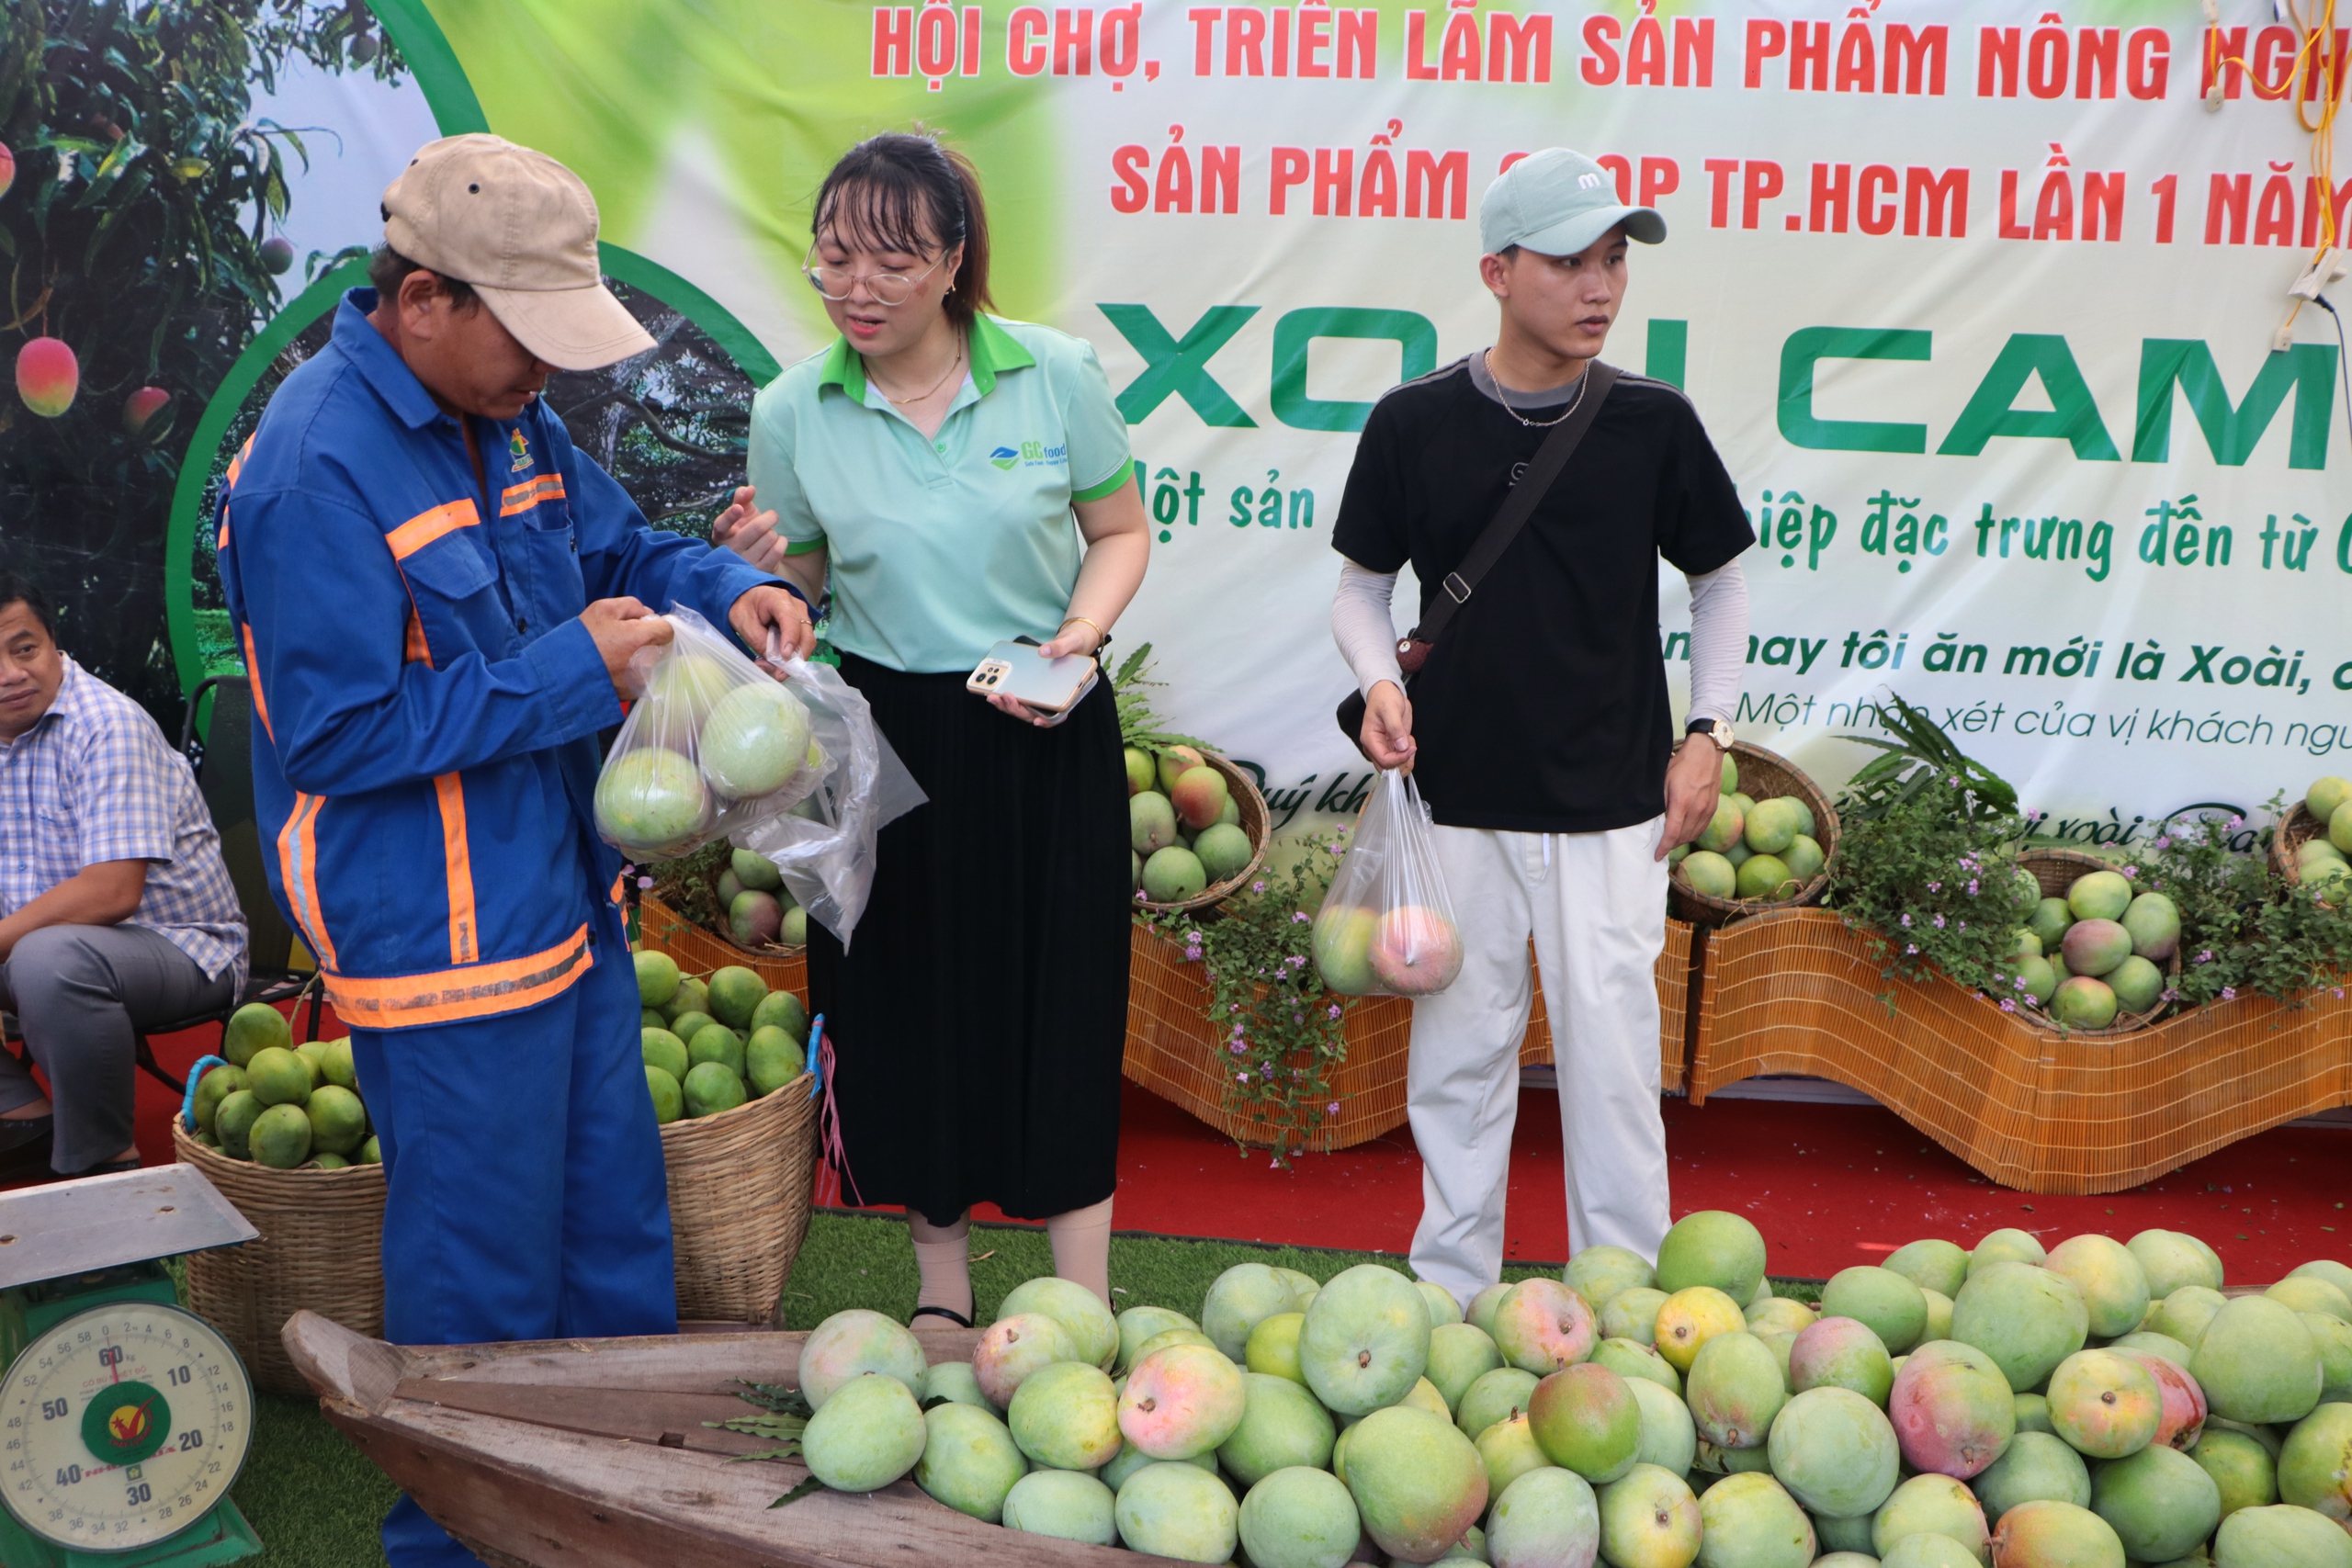 TP.HCM lần đầu tiên có hội chợ sản phẩm nông nghiệp tiêu biểu, sản phẩm OCOP- Ảnh 1.